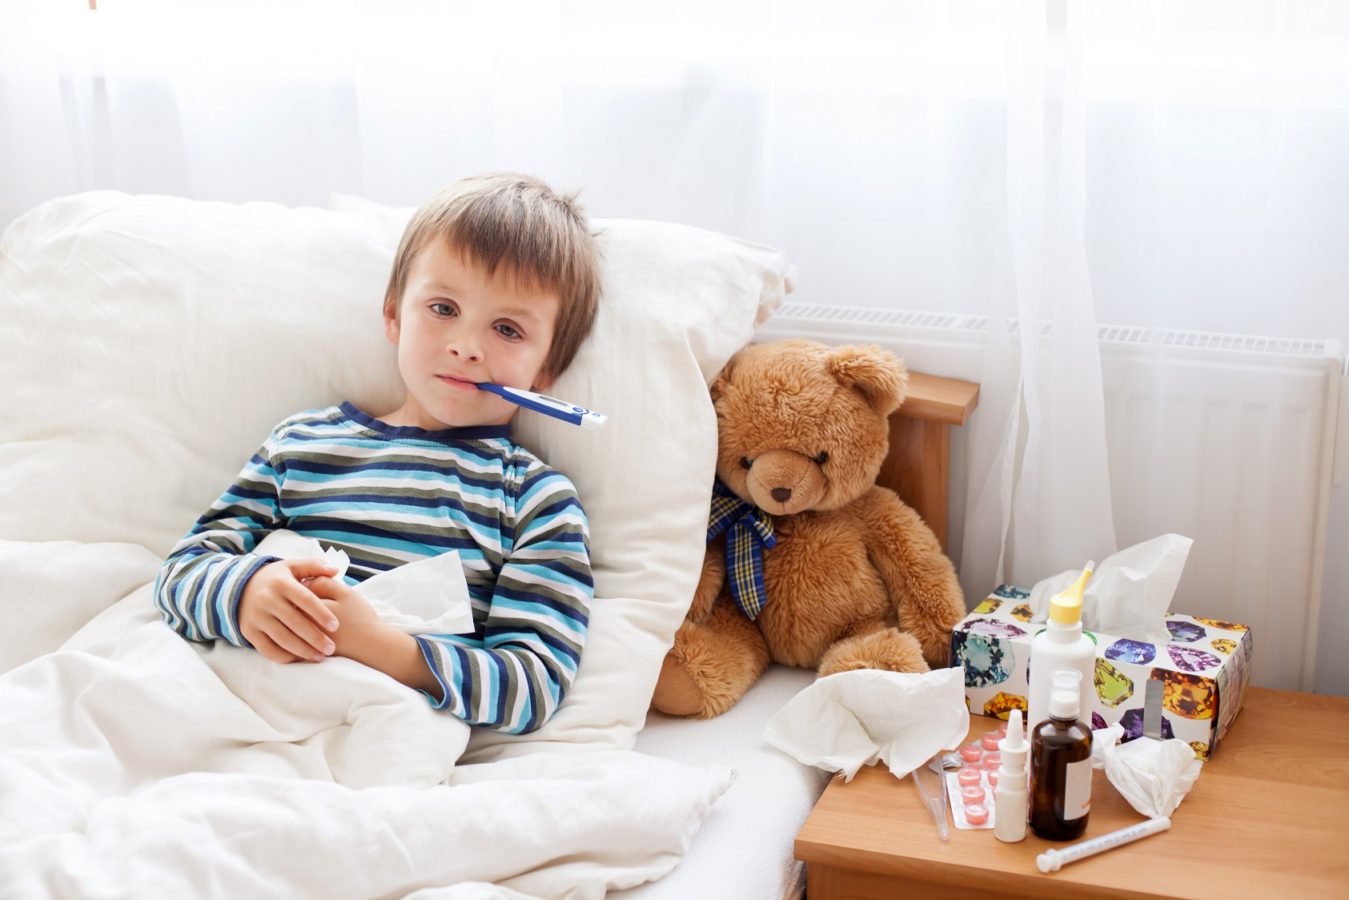 Детский насморк: как избежать осложнений?